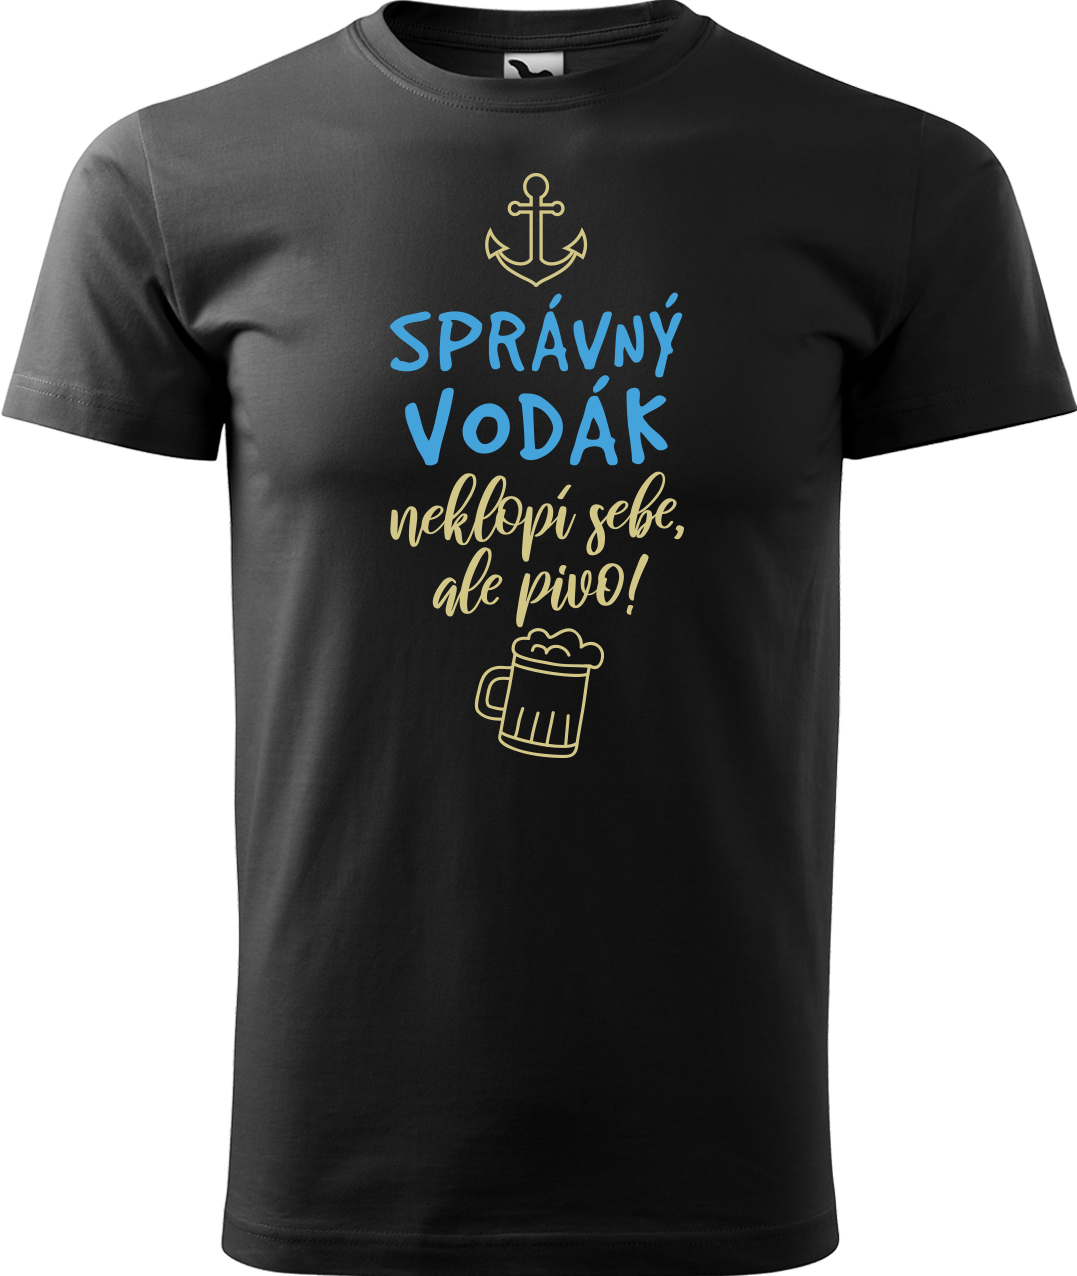 Pánské vodácké tričko - Správný vodák Velikost: L, Barva: Černá (01)